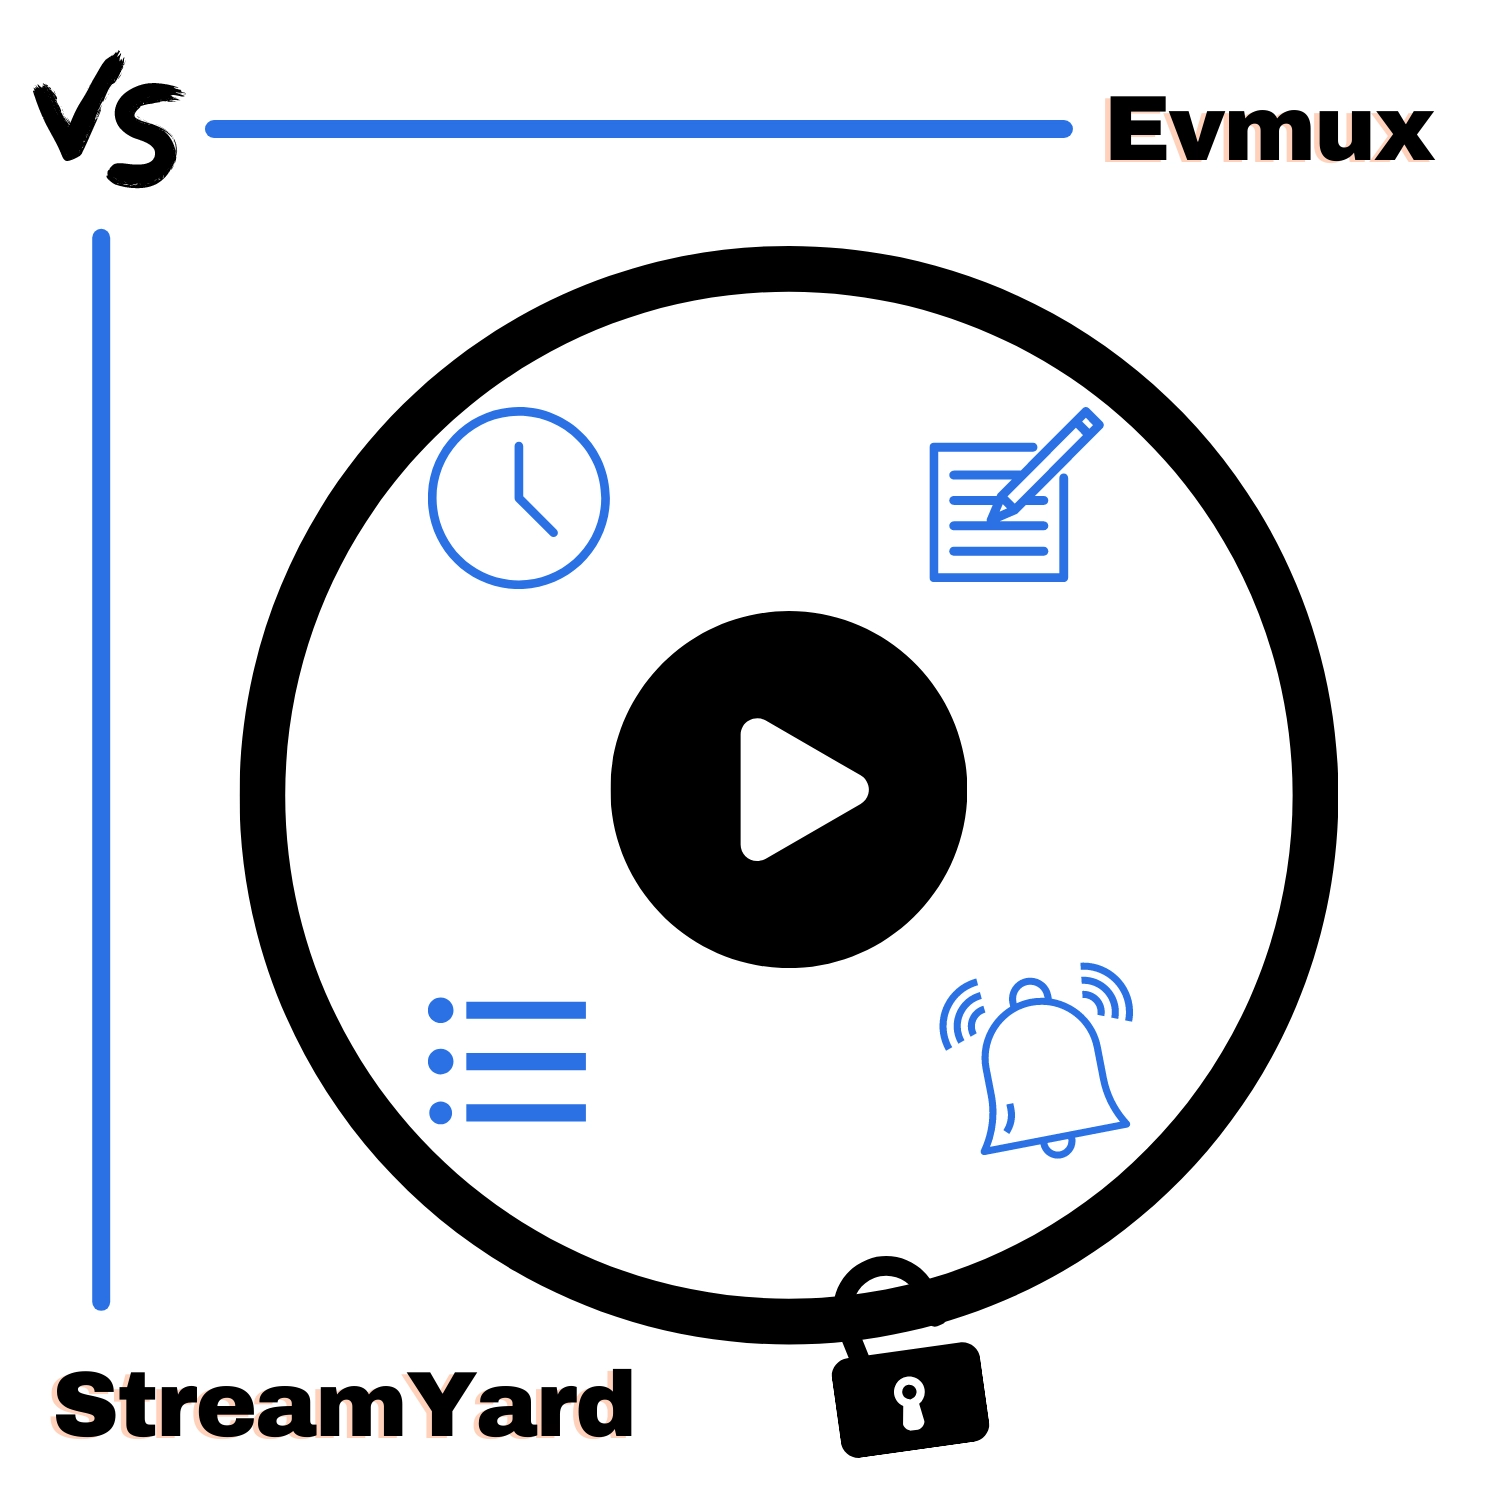 Evmux vs. StreamYard